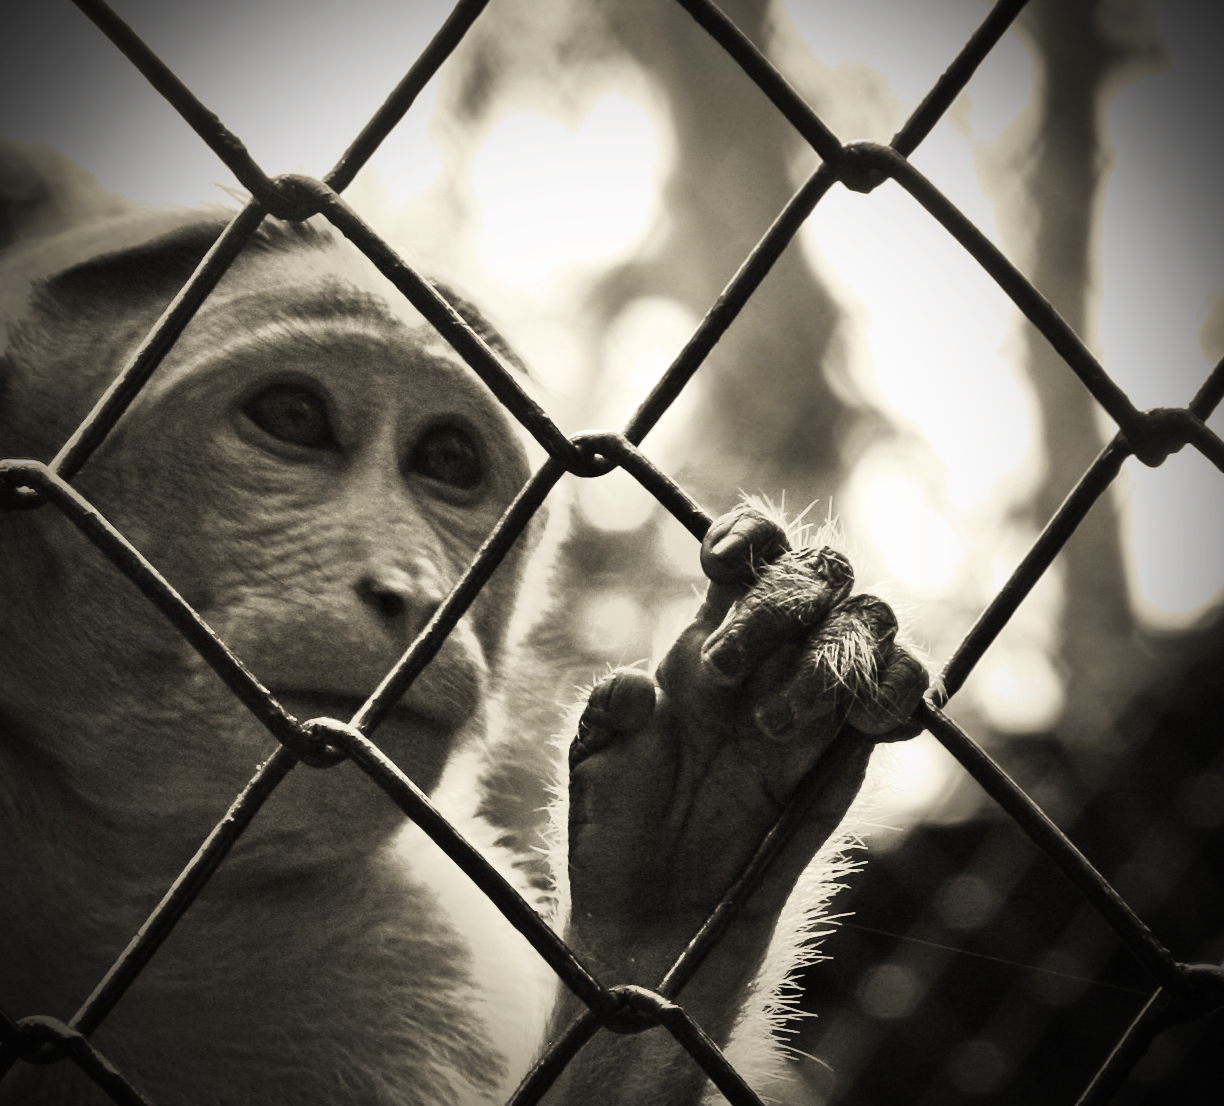 Caged animals. Скучающая обезьяна. Жестокое обращение с животными.